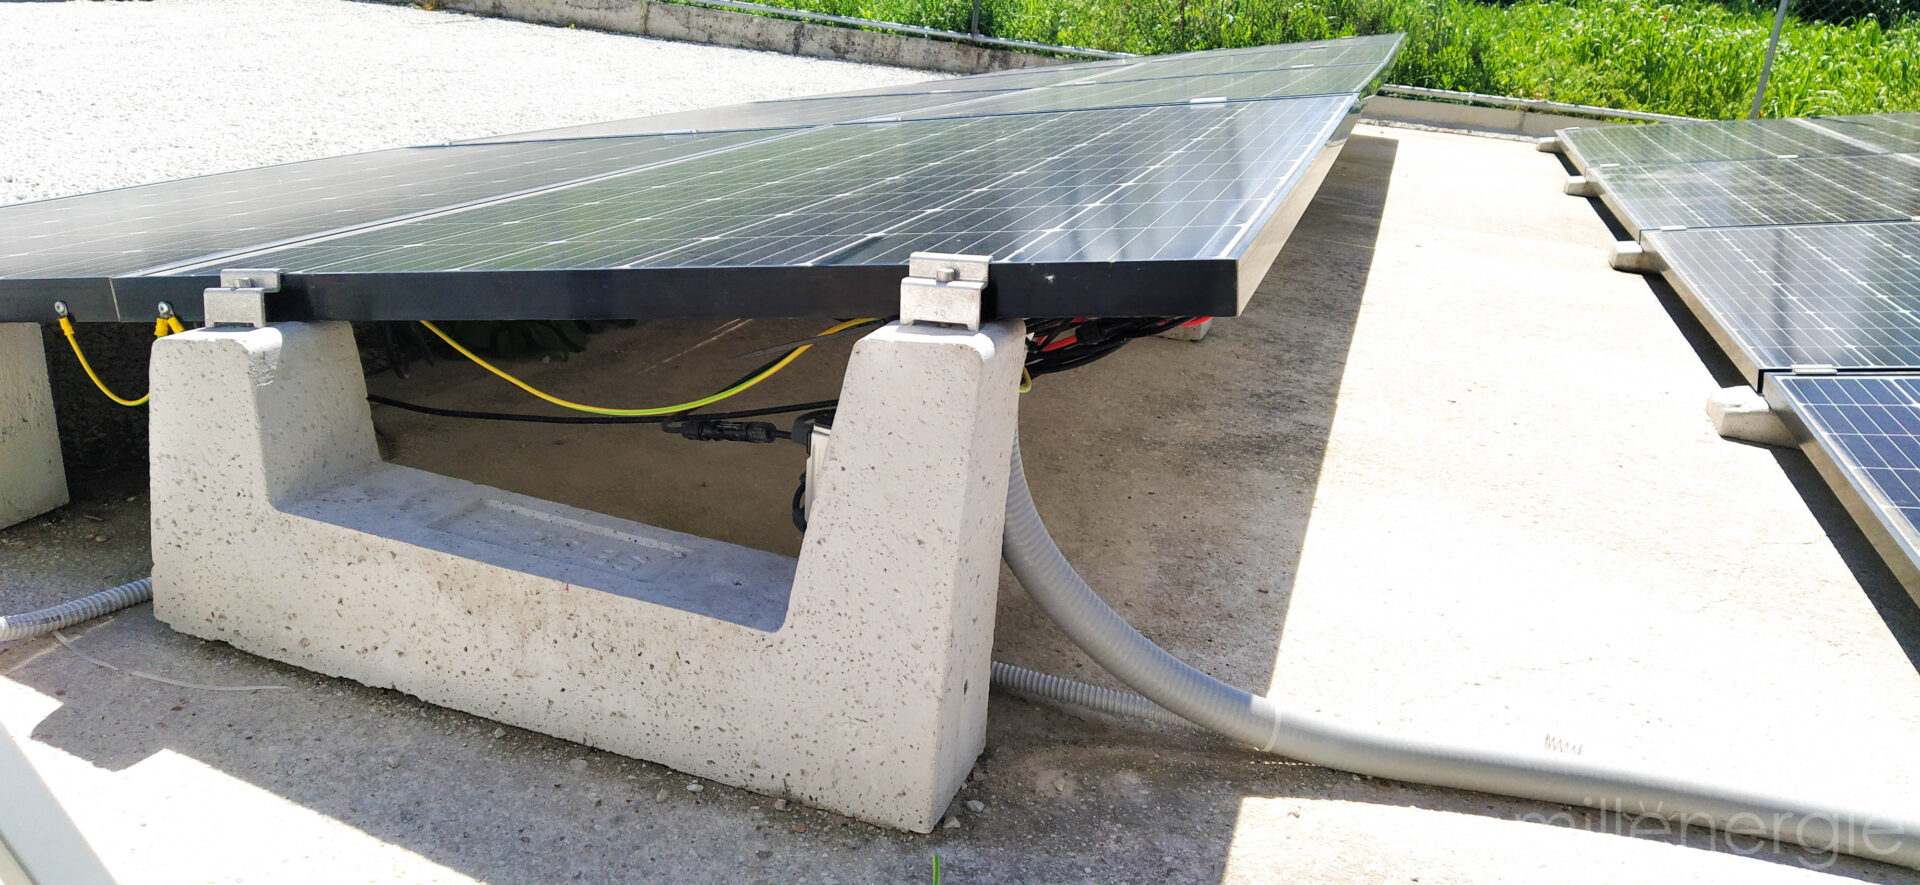 Installazione fotovoltaico con le zavorre